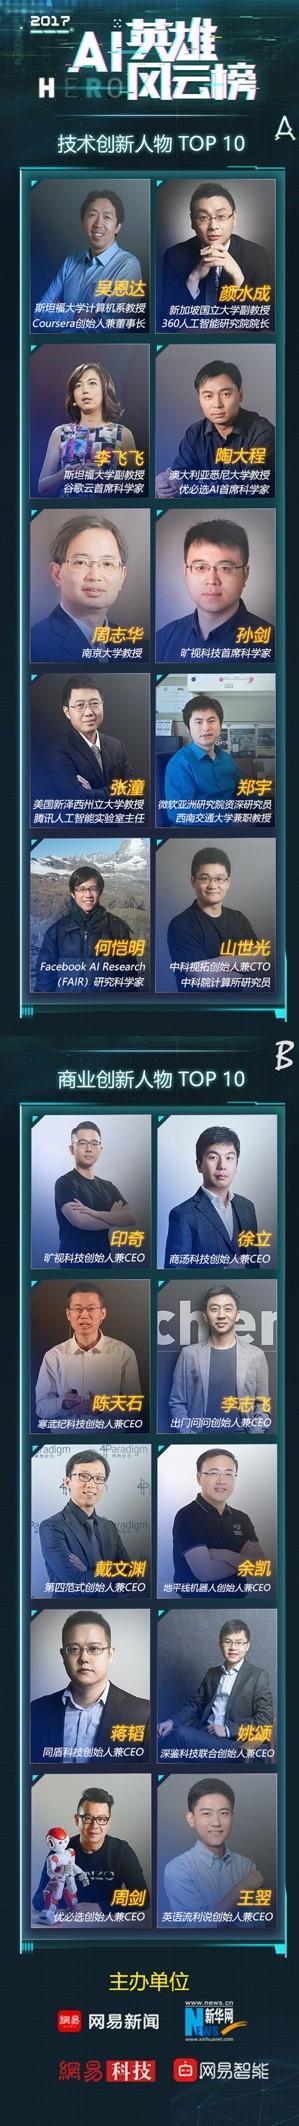 “2017中国AI英雄风云榜”吴恩达李飞飞等榜上有名